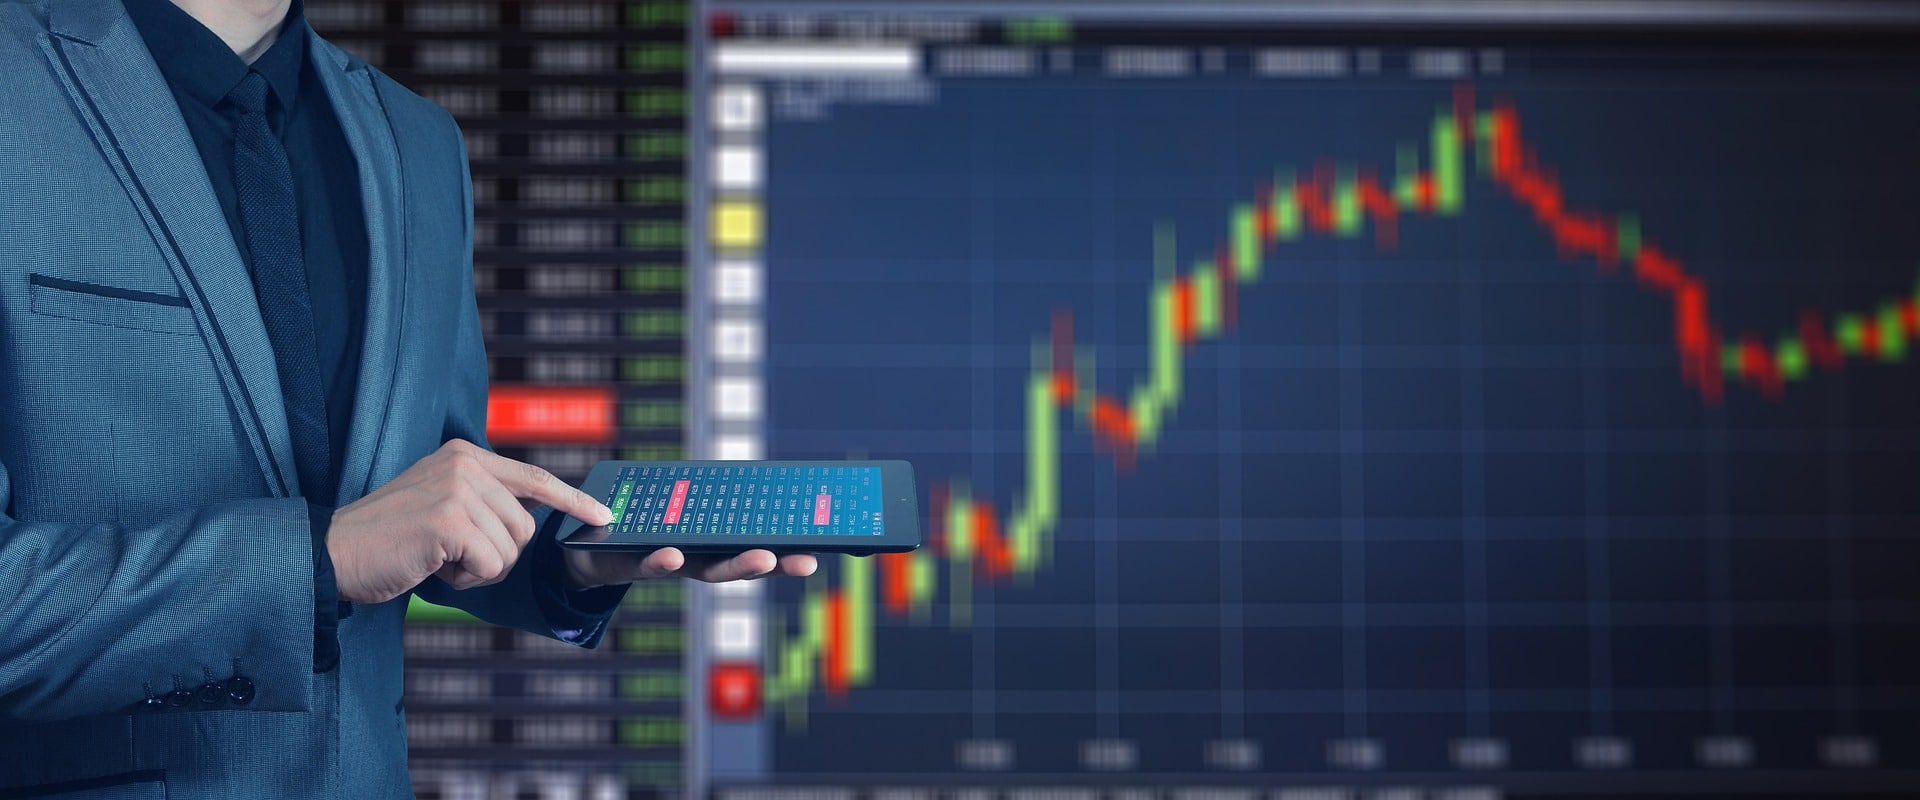 degiro app review trading stocks